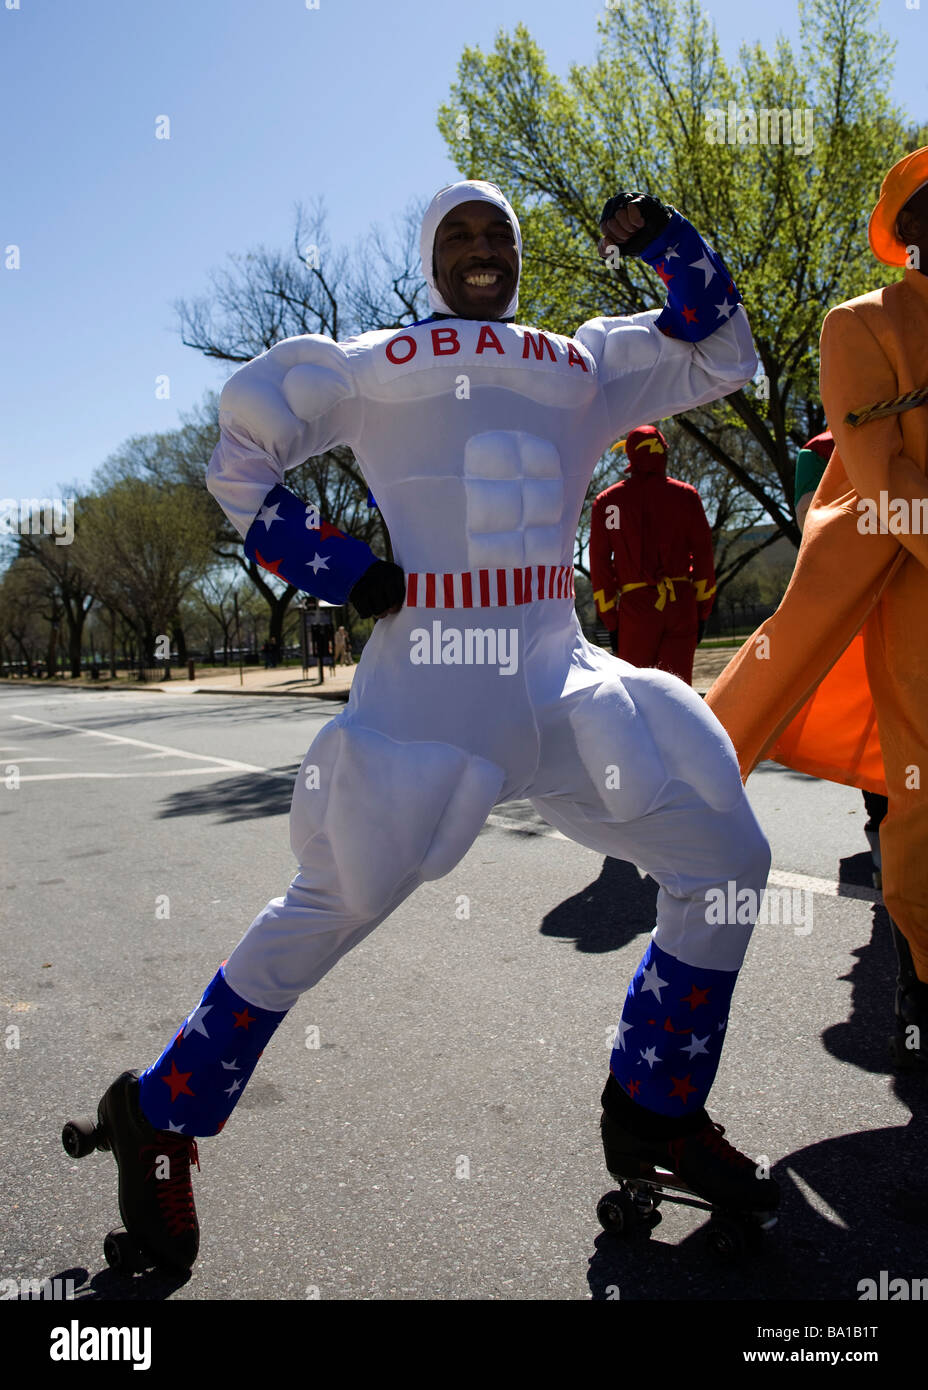 Afrikanische männlichen Roller-Skater in OBAMA Superhelden Muskel Kostüm  Stockfotografie - Alamy